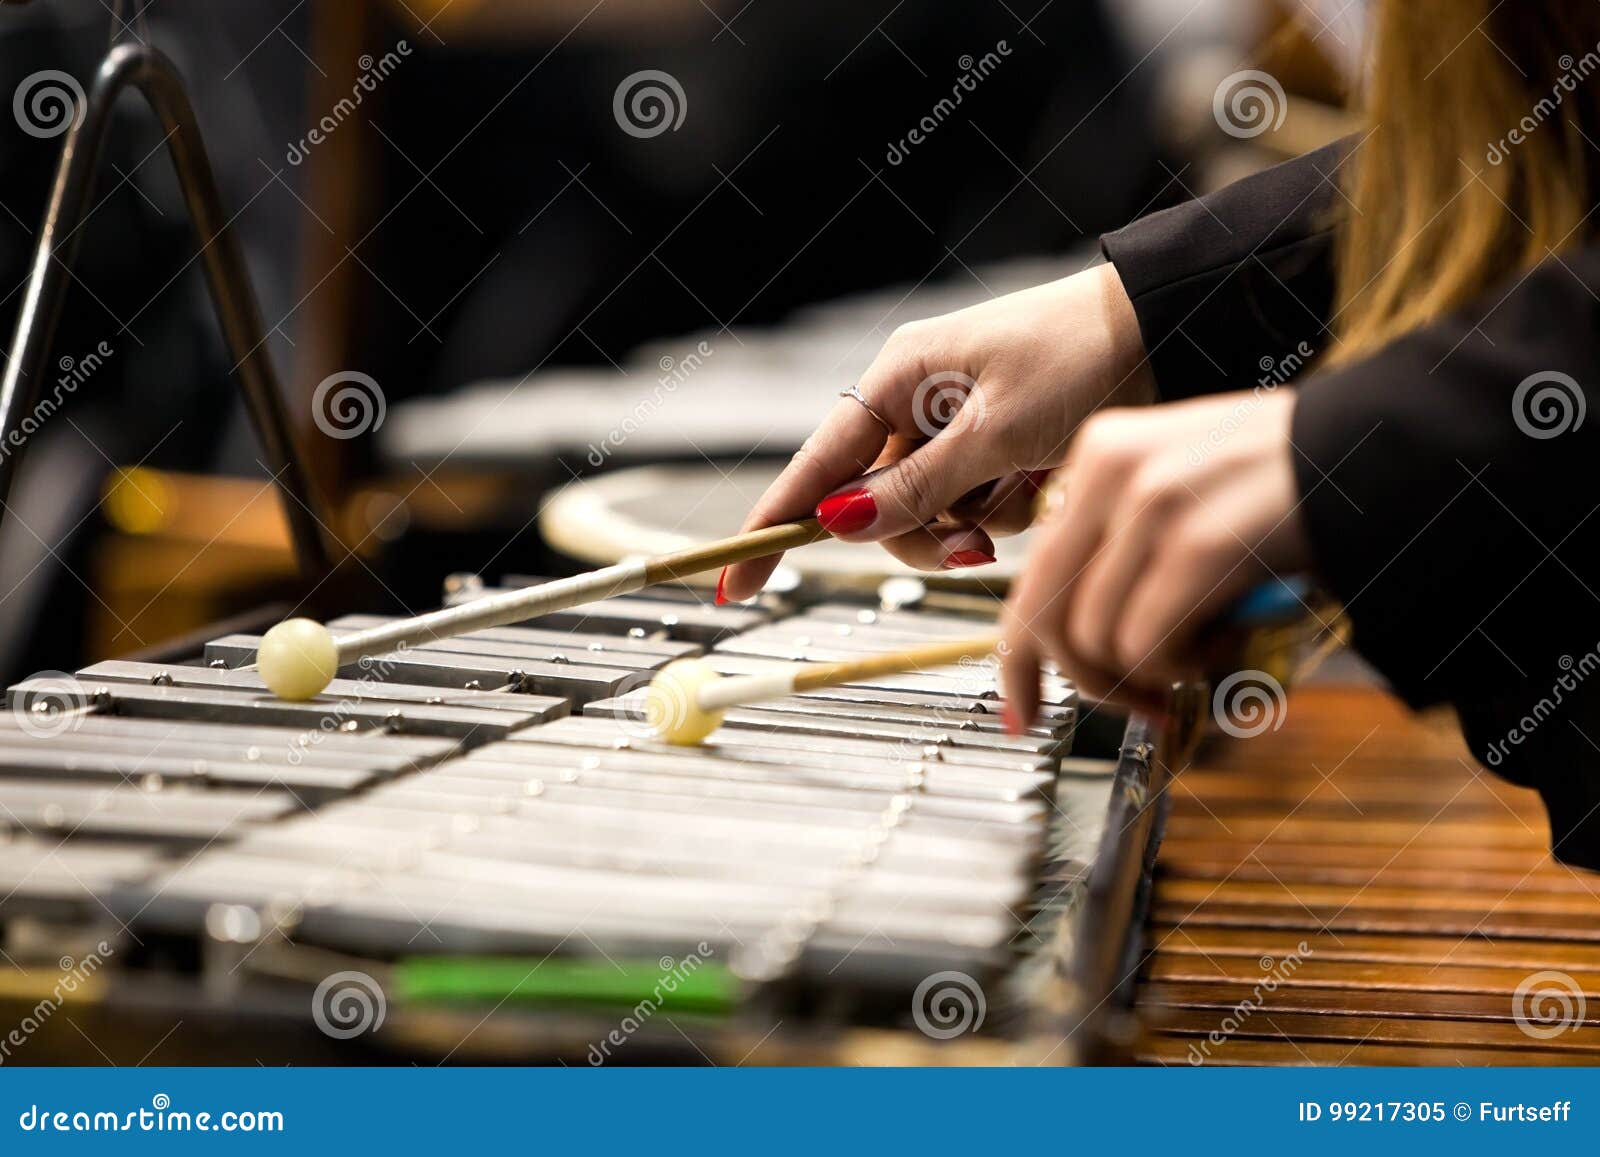 Hands of a girl playing a glockenspiel closeup